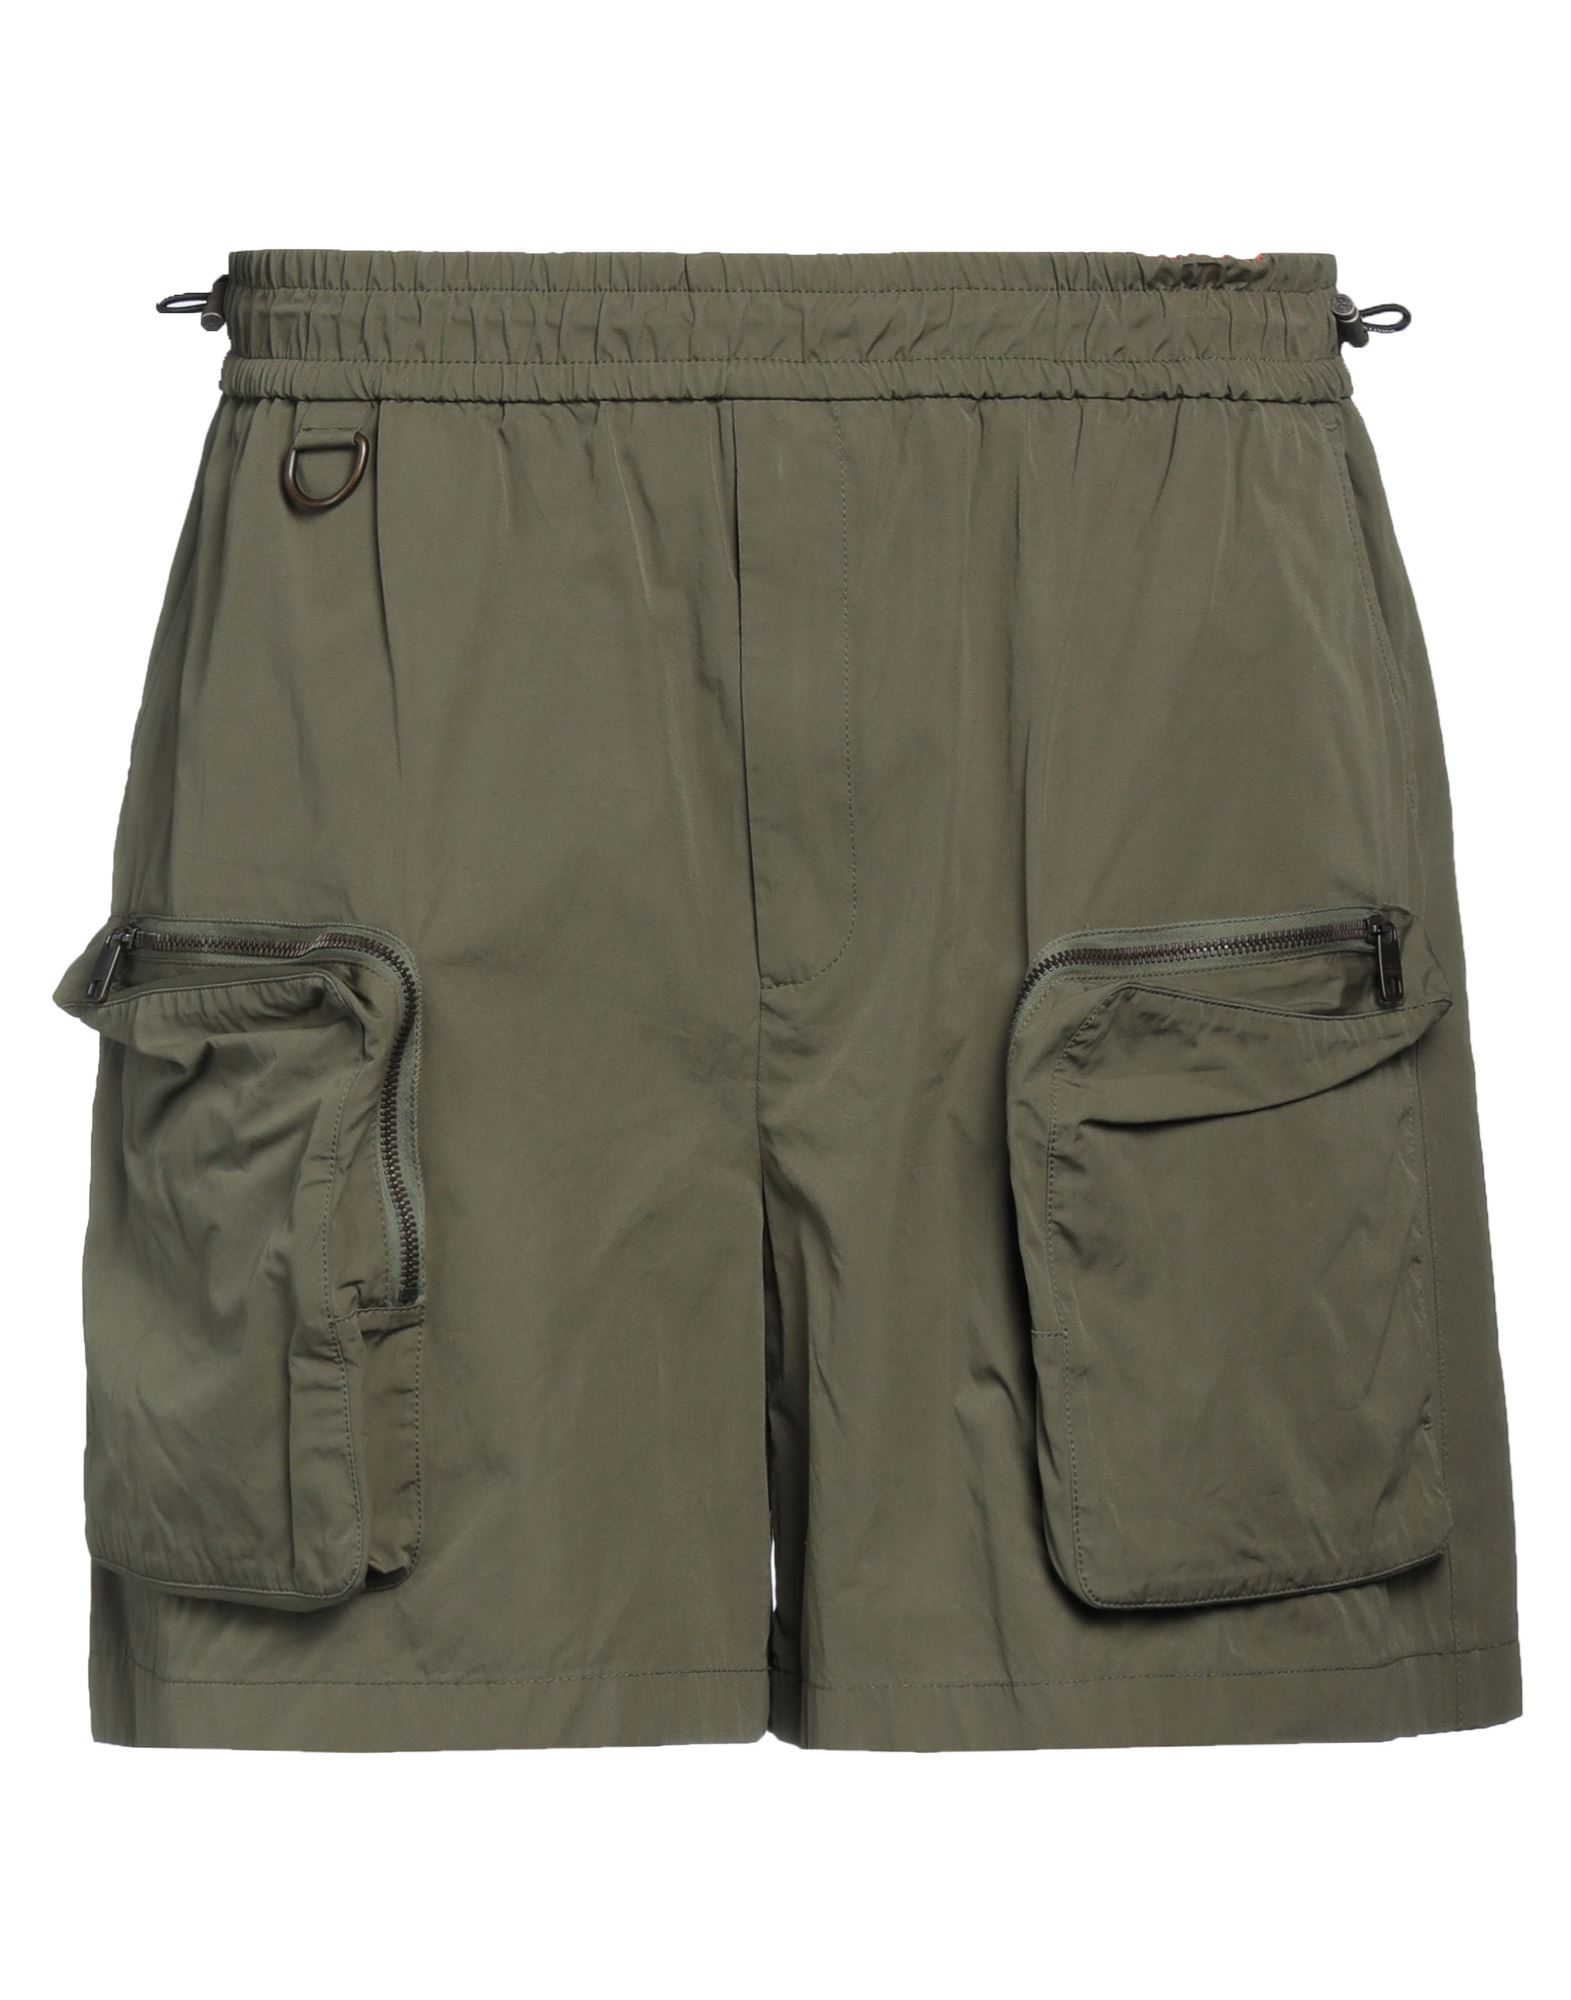 Dolce & Gabbana Man Shorts & Bermuda Shorts Military Green Size 38 Cotton, Polyamide